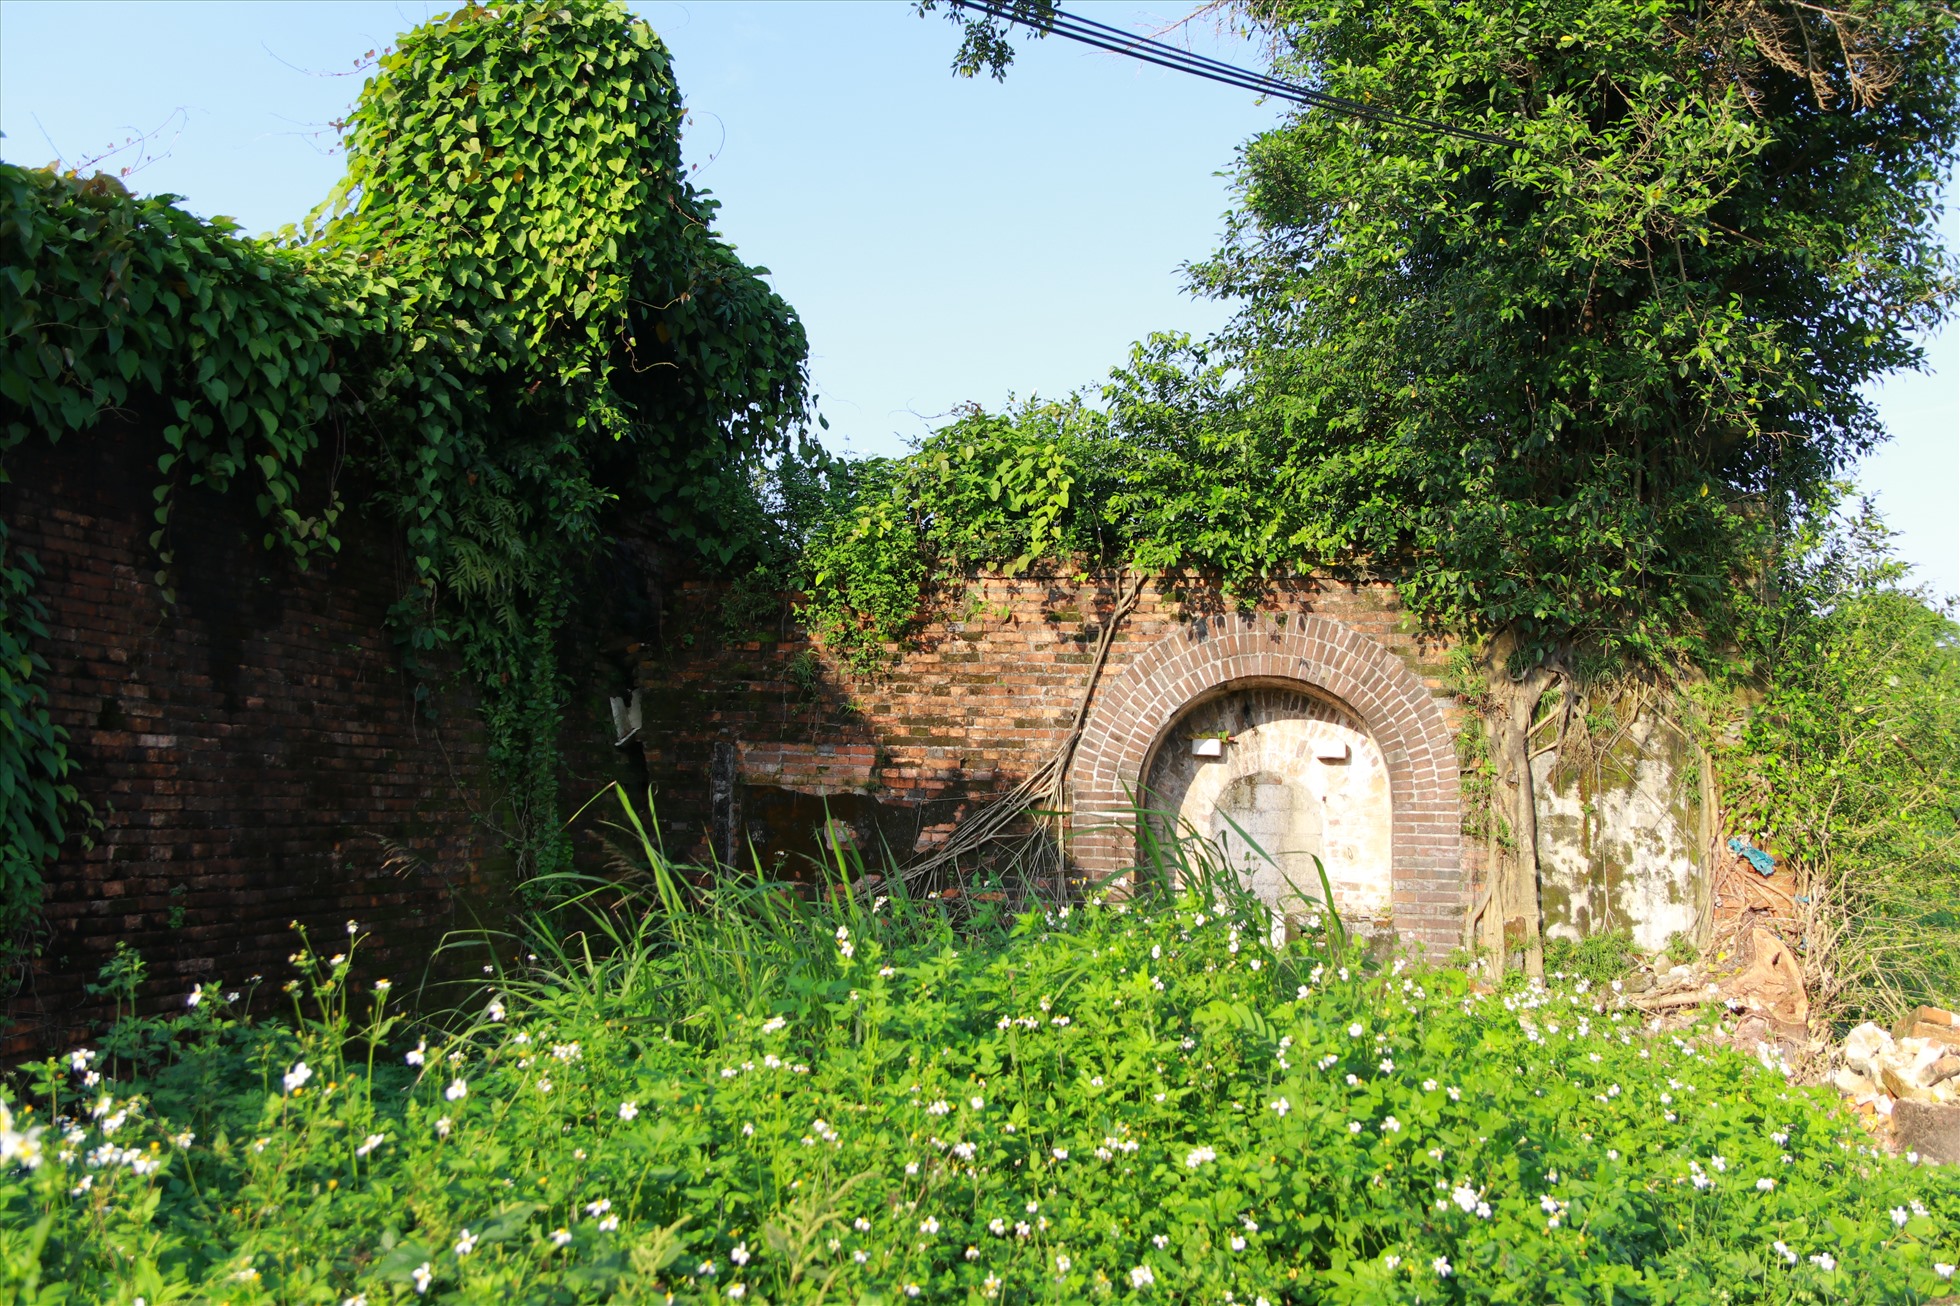 Cổng thứ hai nằm phía tay trái cầu Lương Y. Với hình thù và kích thước giống với cổng thứ nhất, tuy nhiên cổng này đã bị bịt kín bằng gạch táp lô do người dân xây dựng nhà ở mấy chục năm trước.